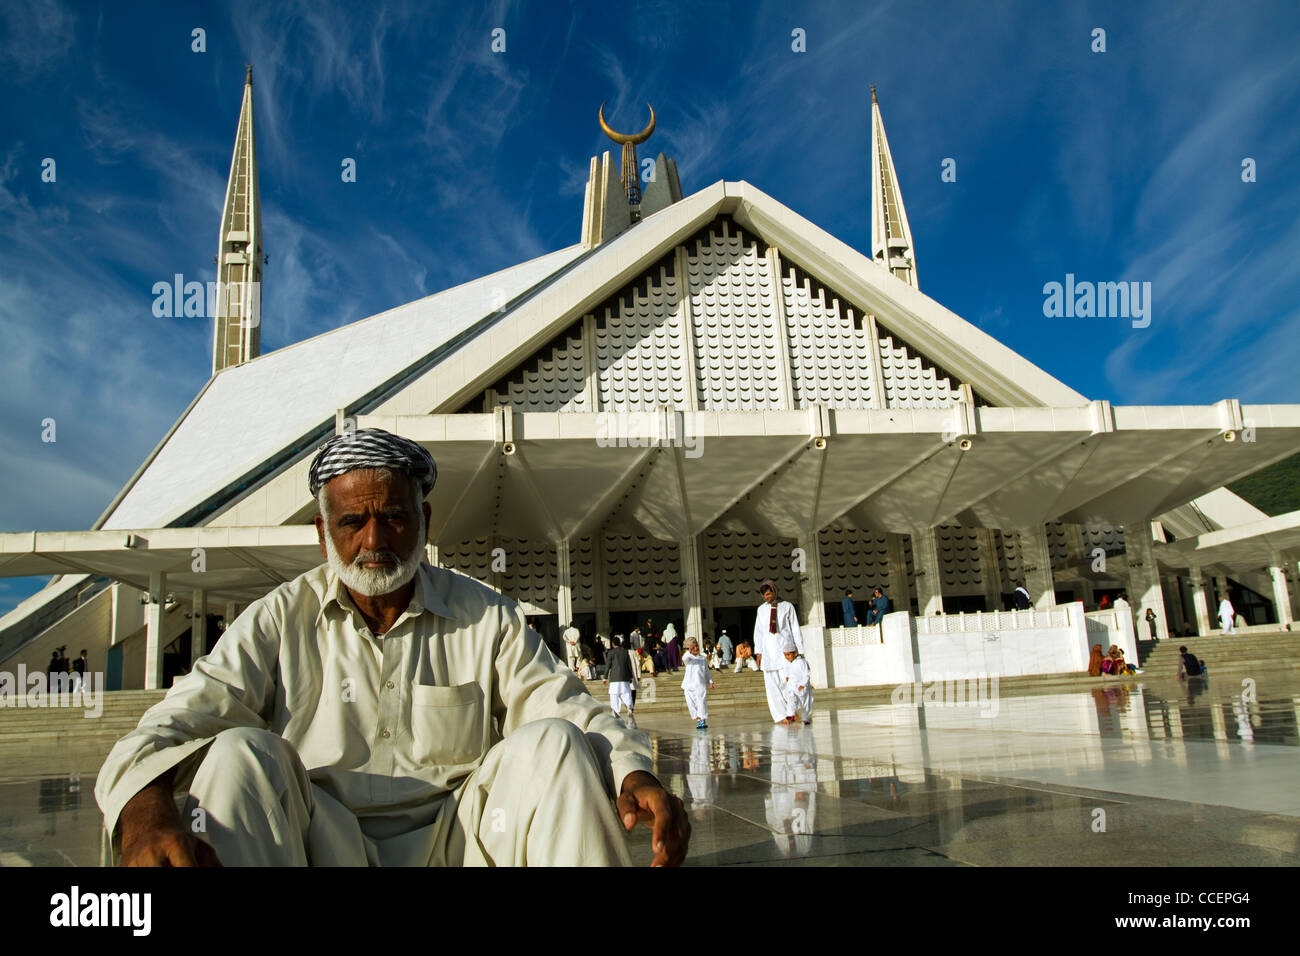 El rey Faisal mezquita y oraciones Islamabad, Pakistán Foto de stock